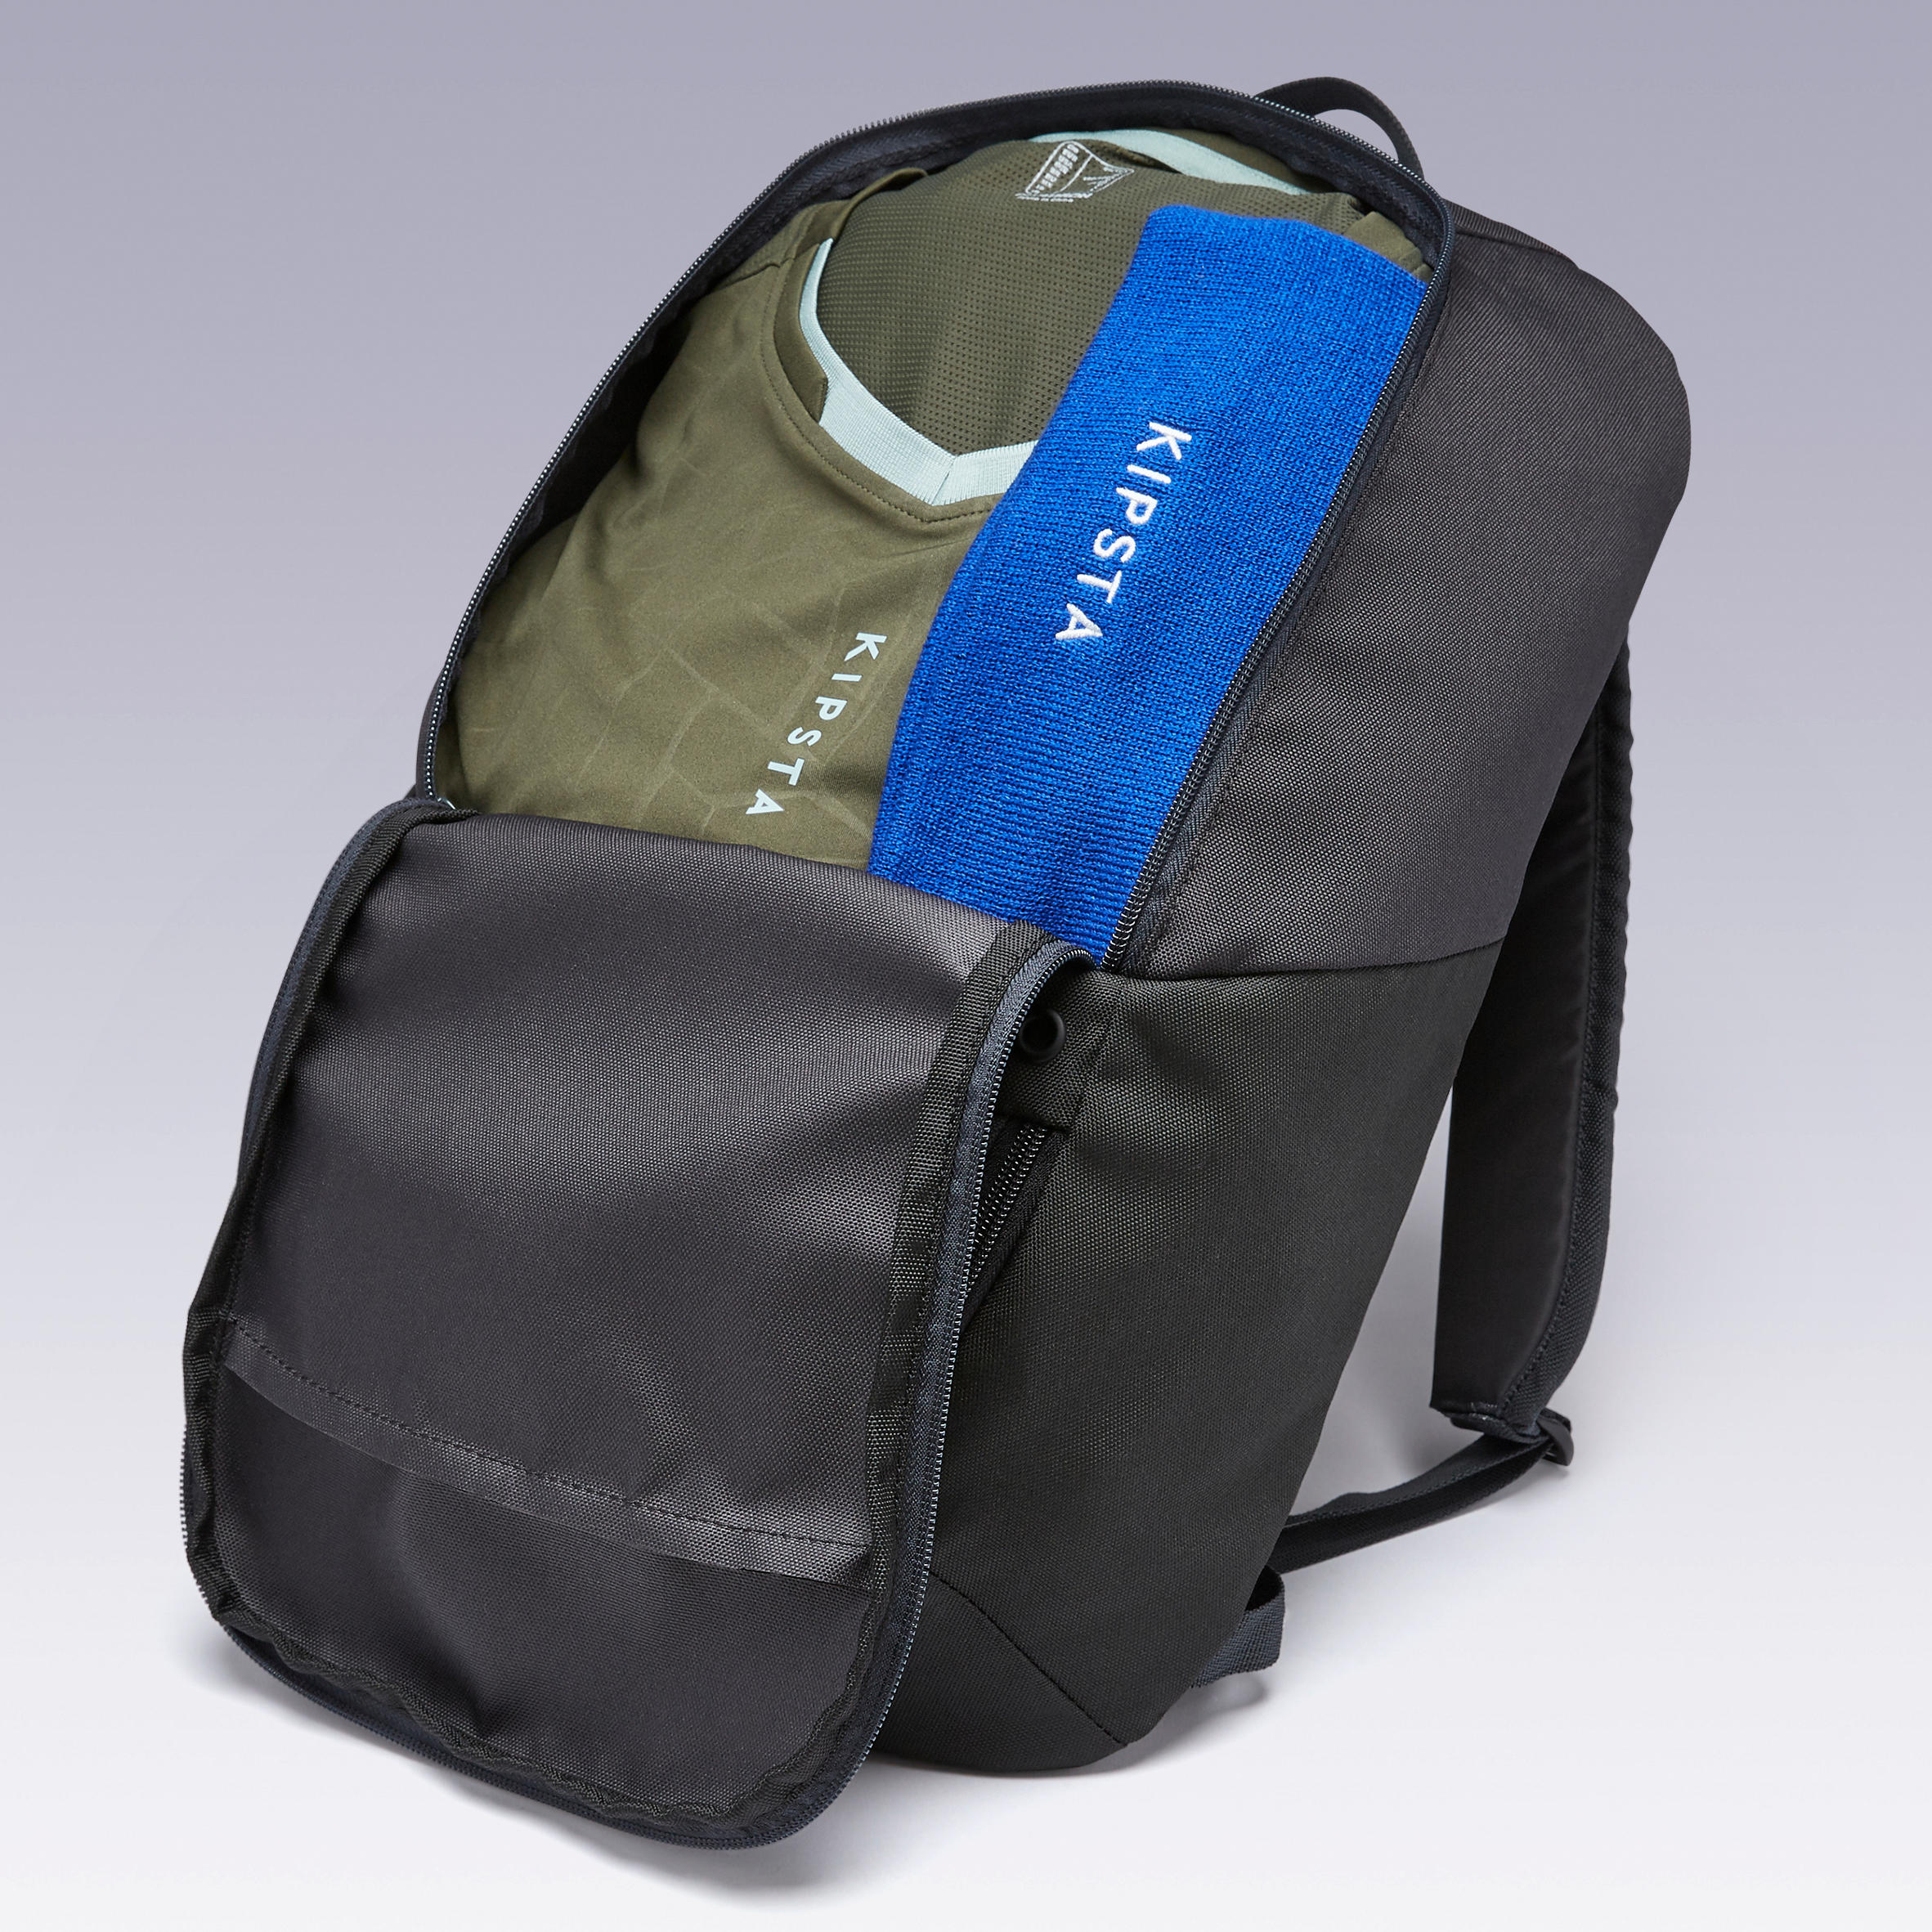 ULPP 17-Litre Backpack - Black 7/11